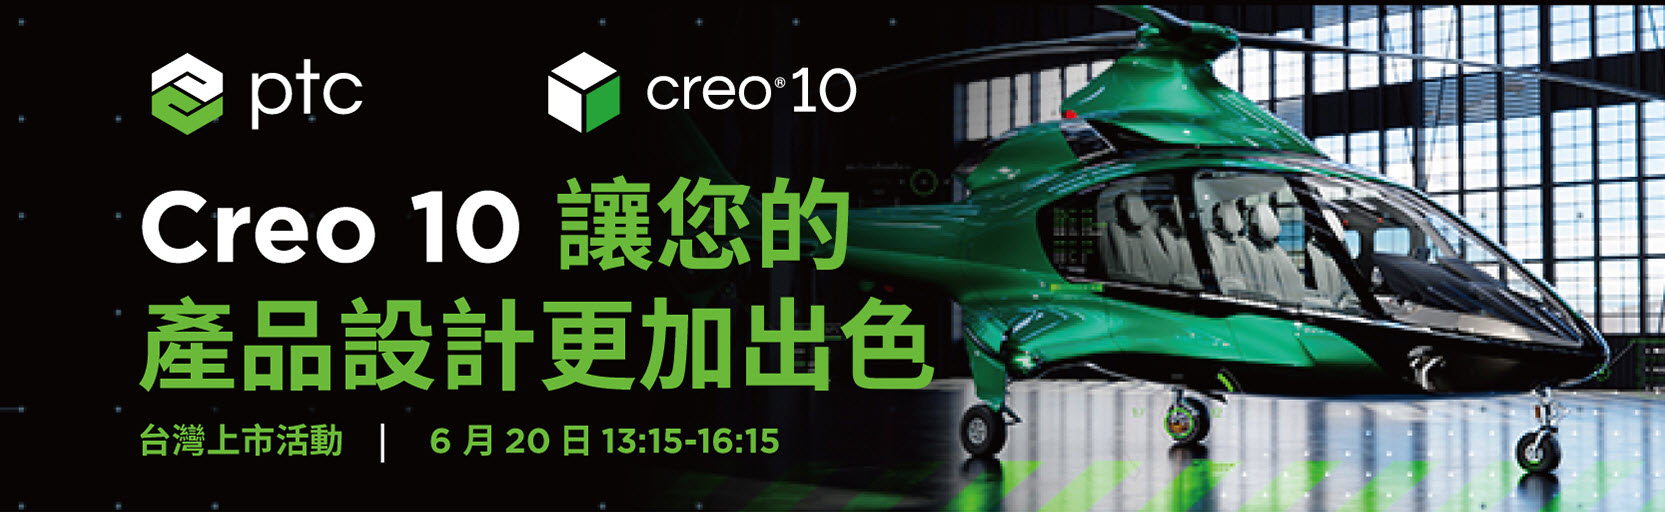 PTC Creo 10台湾推出在线论坛